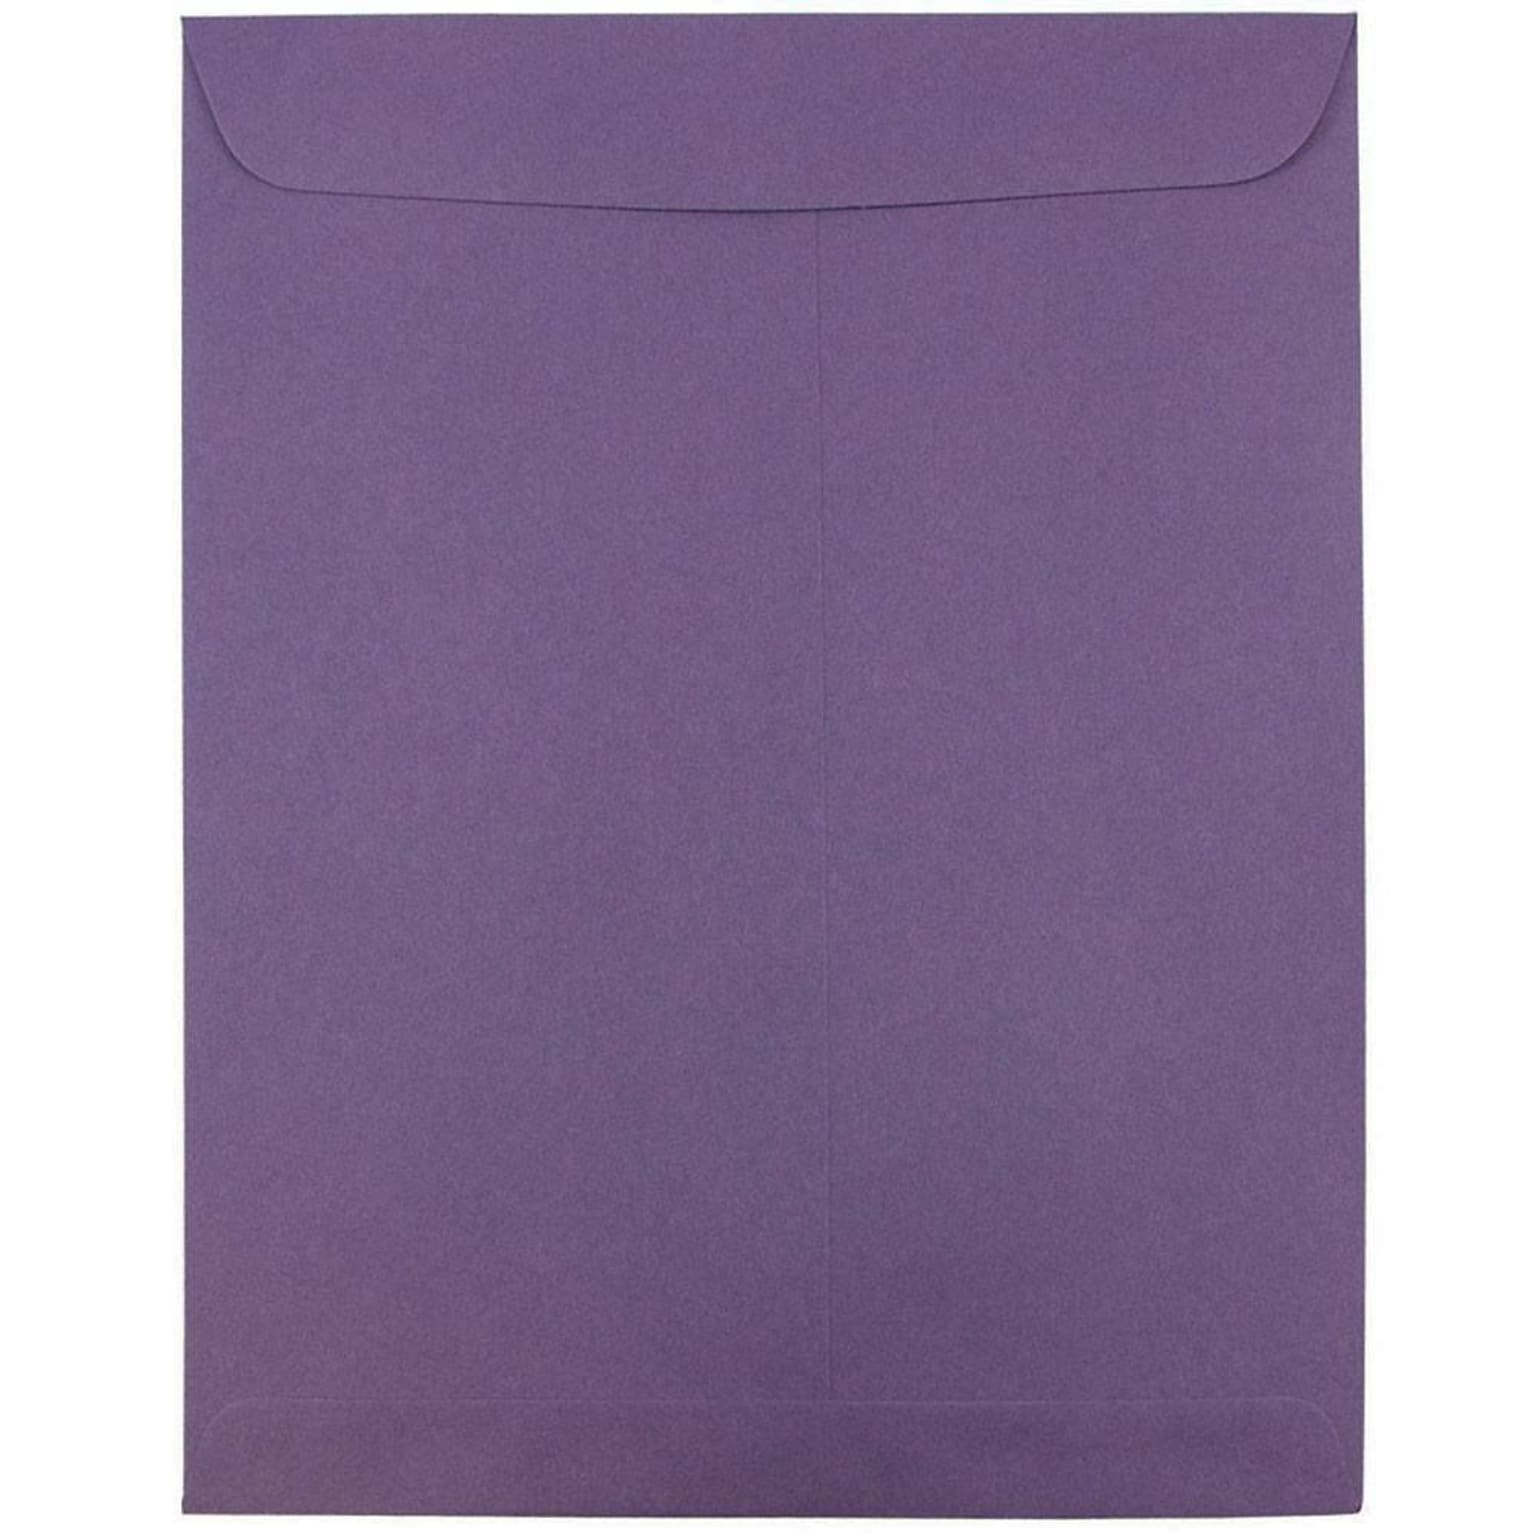 JAM Paper 10 x 13 Open End Catalog Envelopes, Dark Purple, 50/Pack (1287032i)